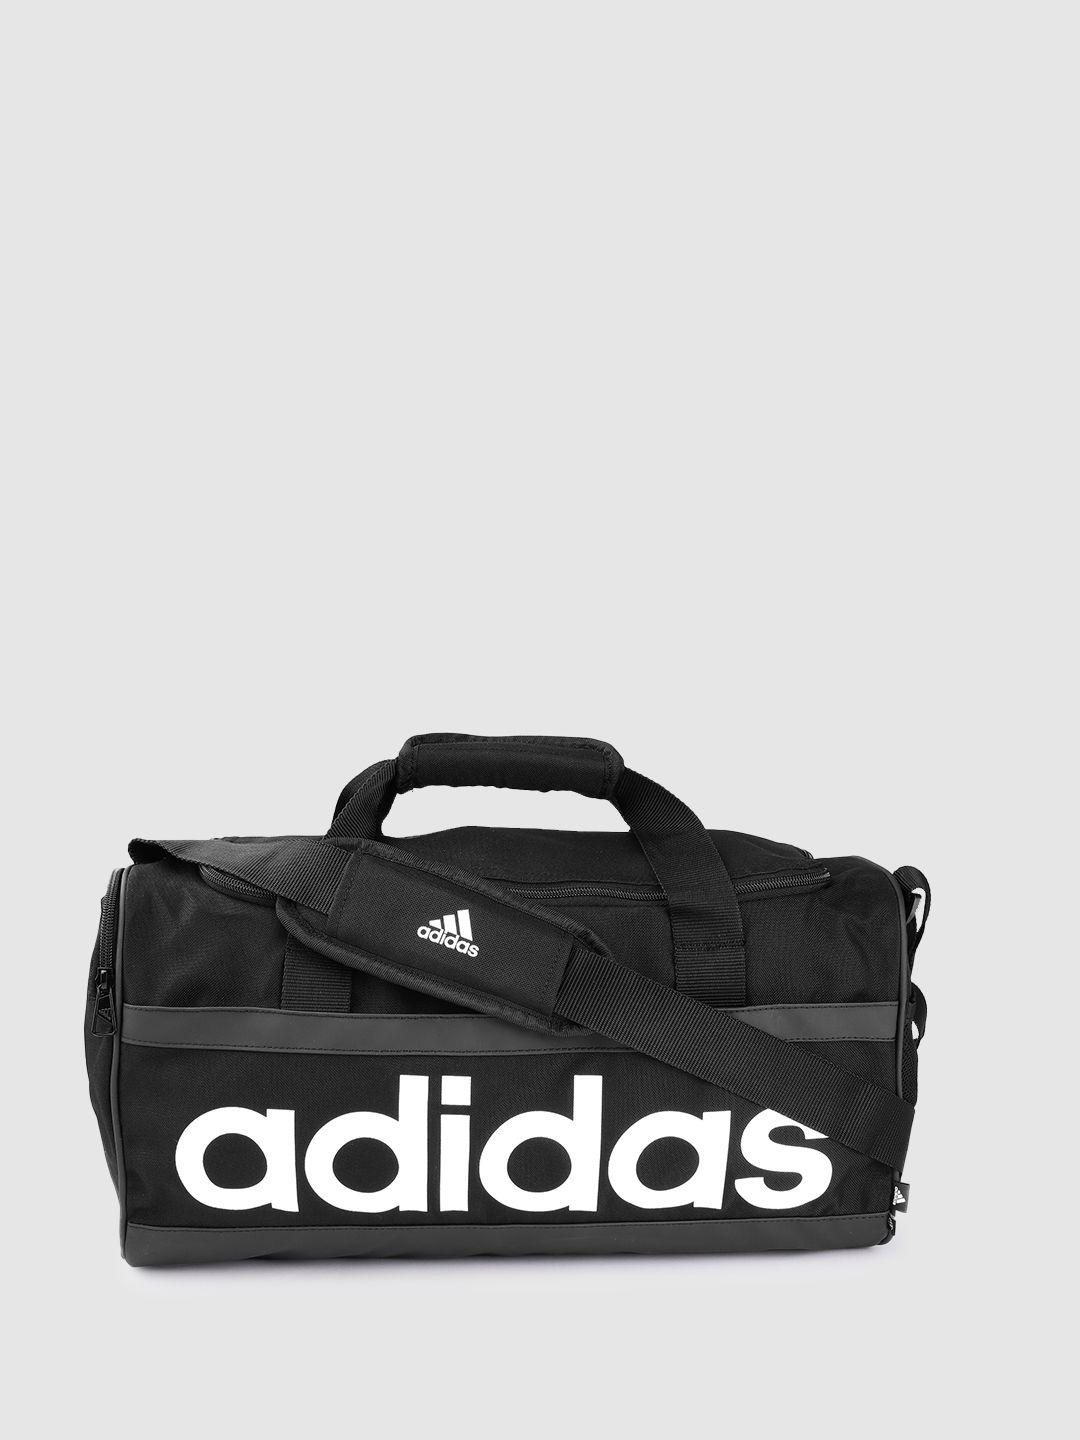 adidas unisex brand logo printed medium-sized linear duffel bag- 20l